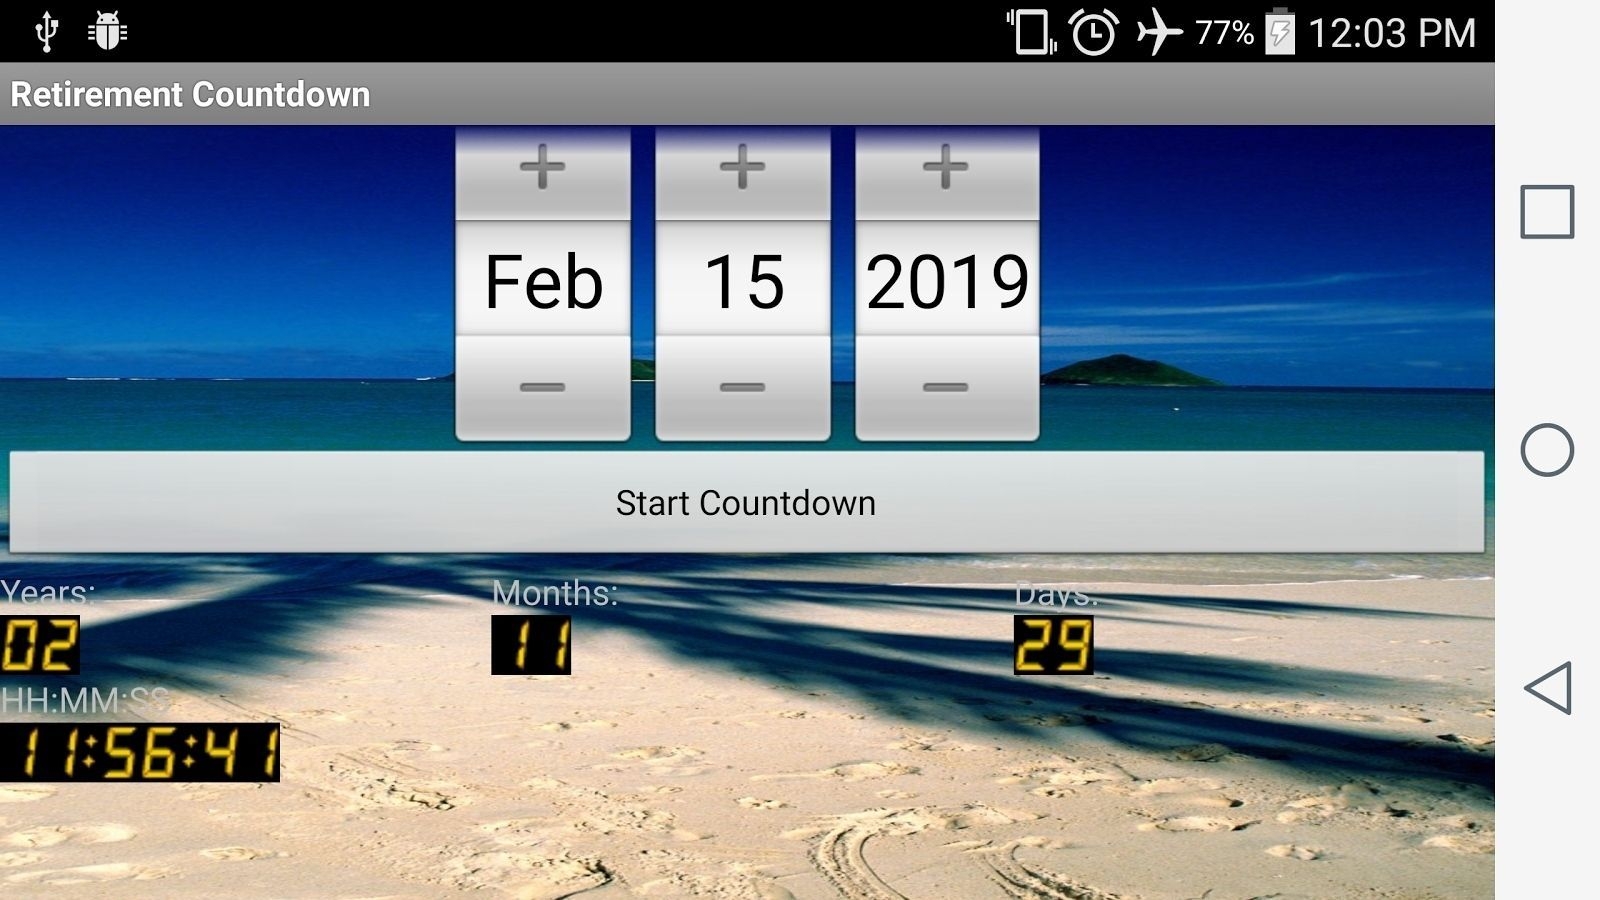 Countdown Calendar Widget For Desktop In 2020 | Retirement